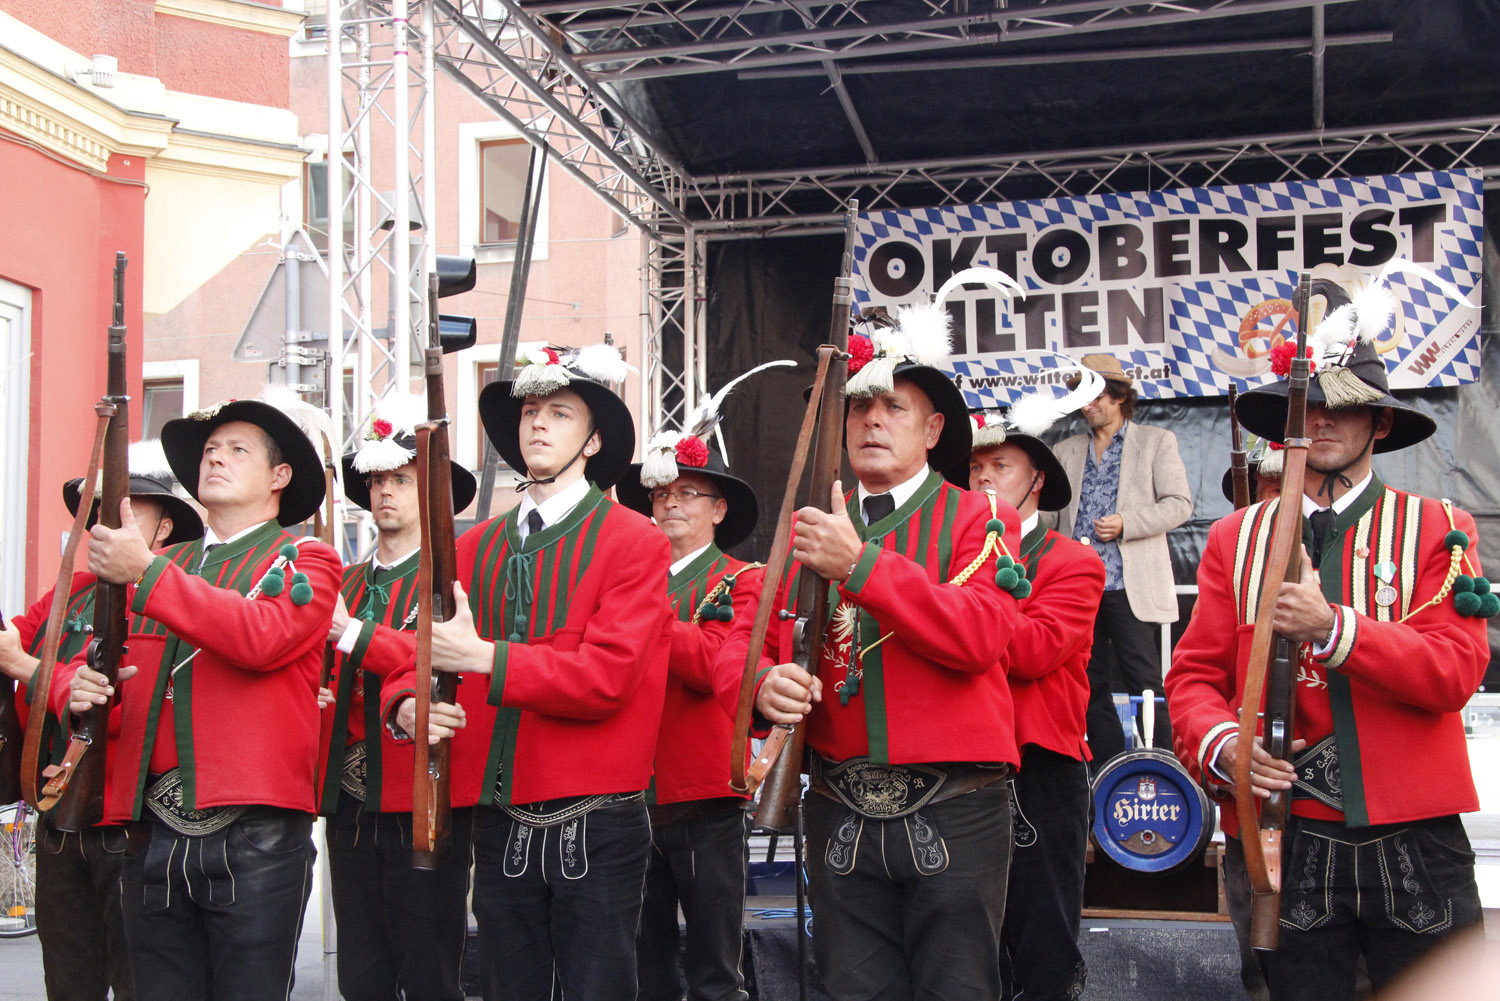 Oktoberfest Wilten 2015